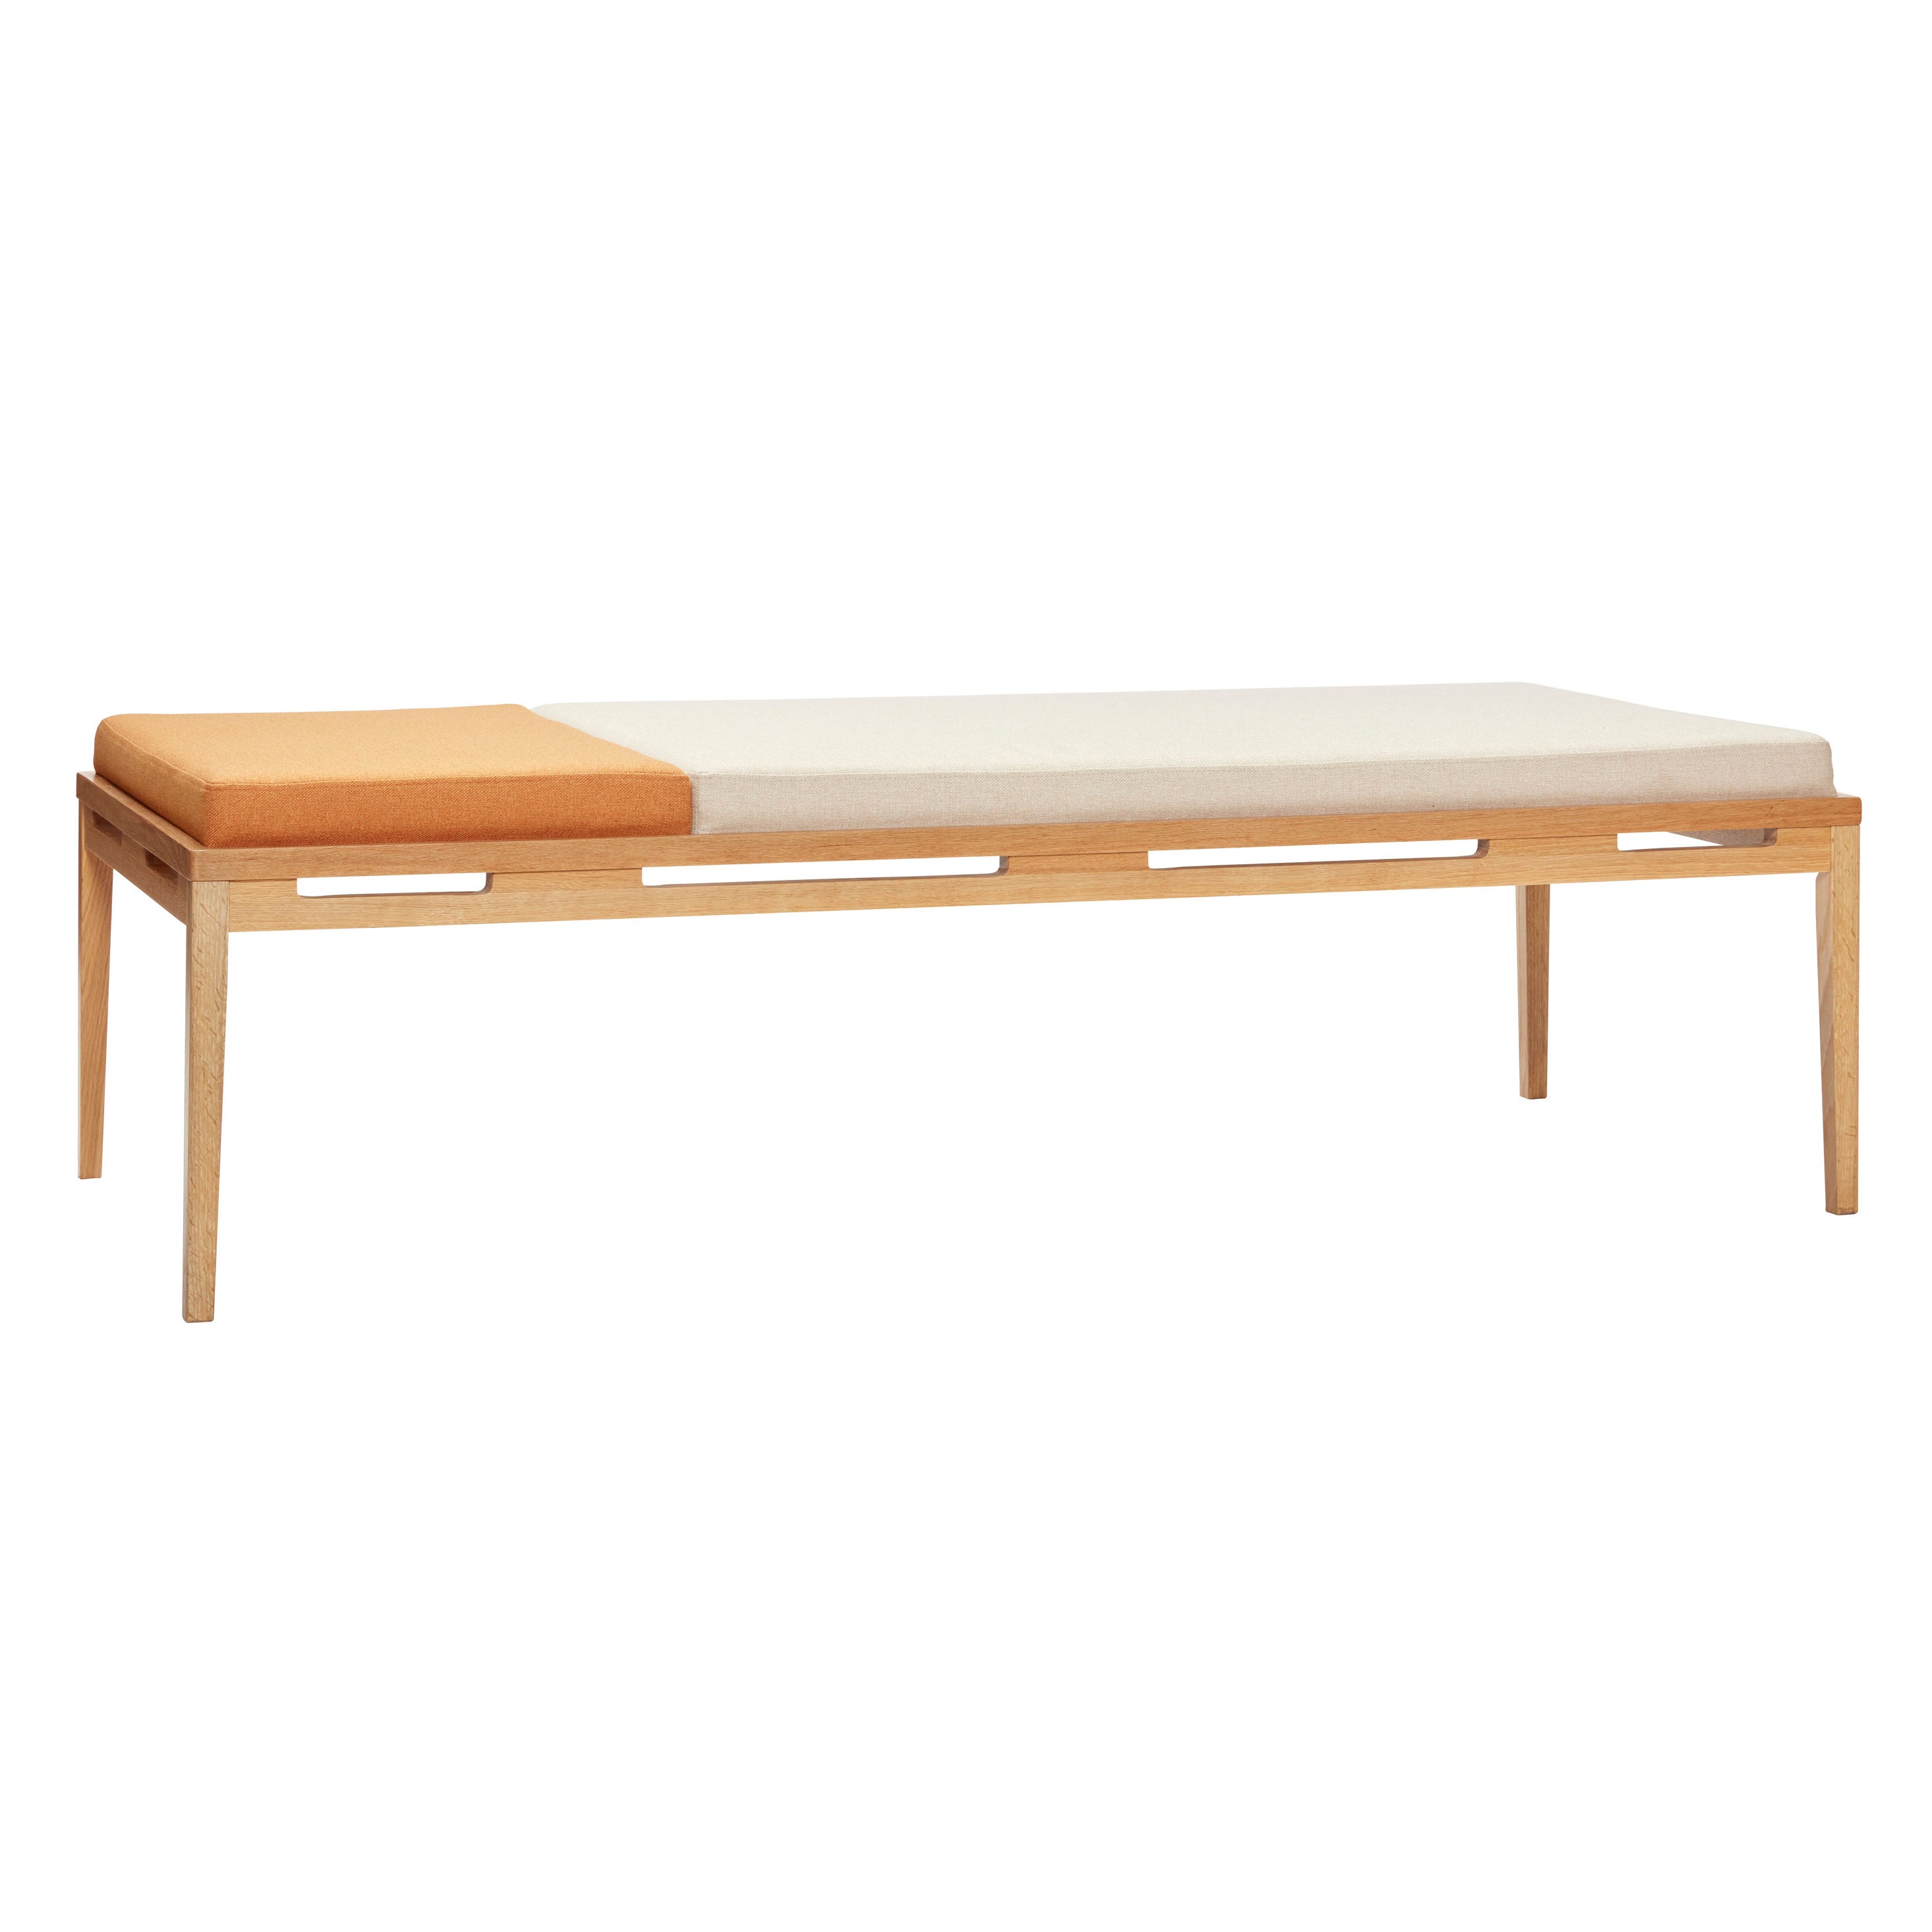 Das Amber Daybed ist ein modernes und stilvolles Möbelstück aus Eichenholz und Polyester in den Farben Orange, Beige und Naturfarben, perfekt für Wohn- und Schlafzimmer und bietet bequemen Sitz- und Liegekomfort